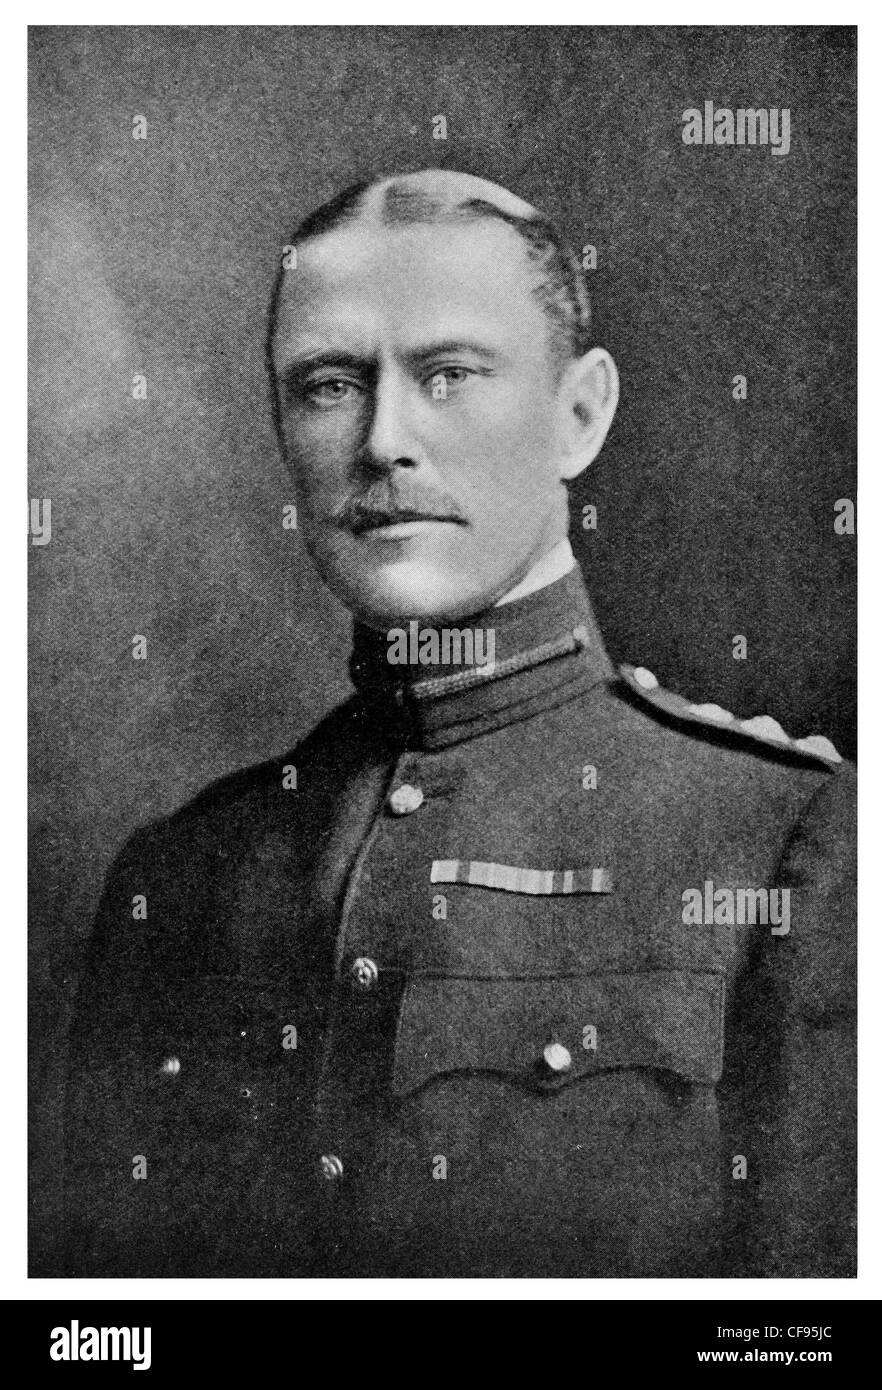 El Mayor General Sir Alexander John Godley GCB, KCMG Fuerza Expedicionaria de Nueva Zelanda y II Anzac Corps durante la Primera Guerra Mundial. Foto de stock